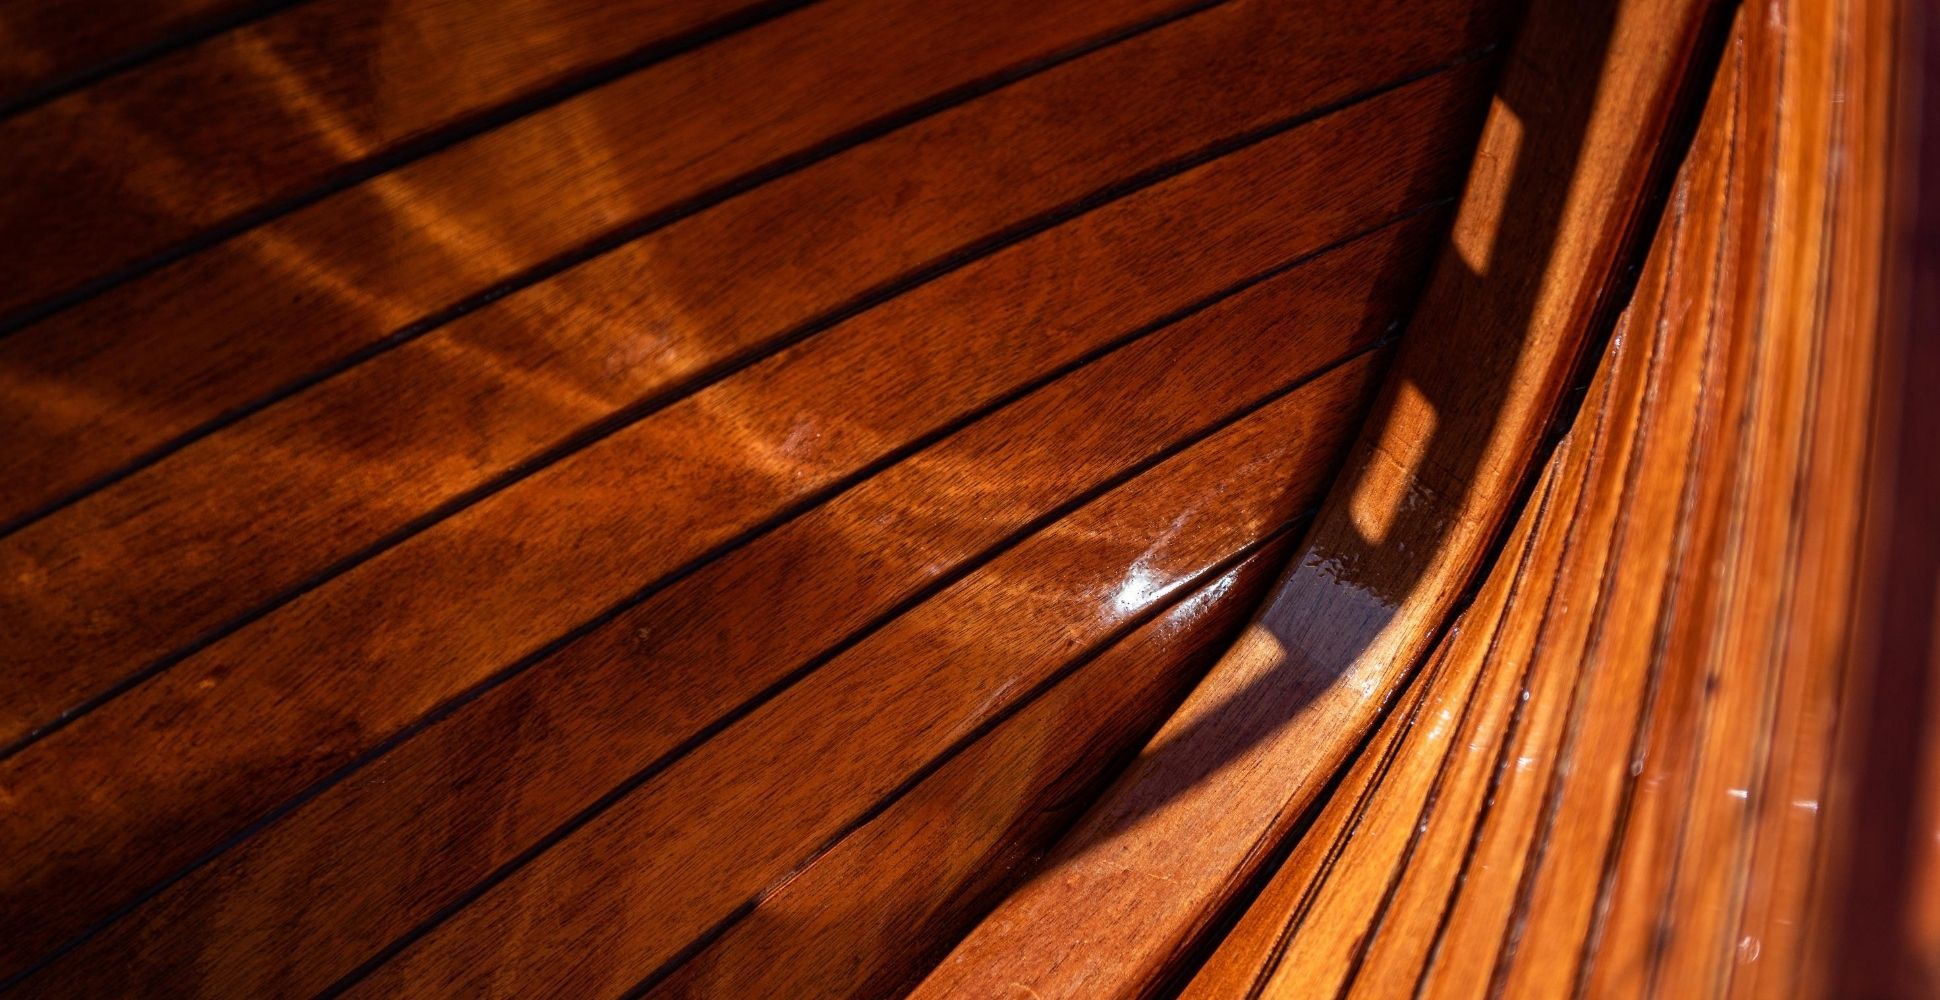 yacht varnish plywood